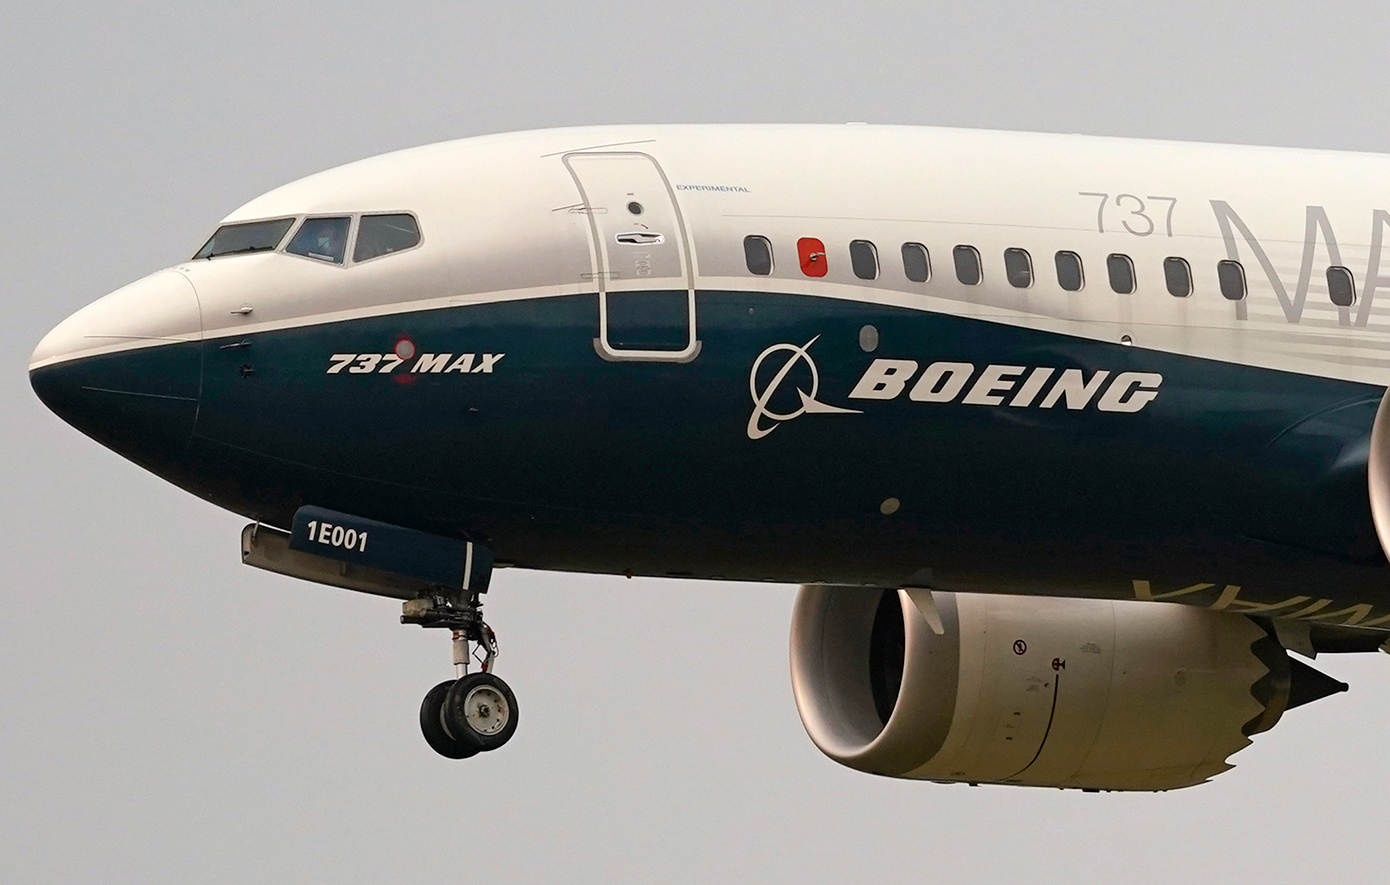 Προειδοποιούν πρώην εργαζόμενοι της Boeing: «Υπάρχουν σοβαρά προβλήματα στις διαδικασίες παραγωγής»